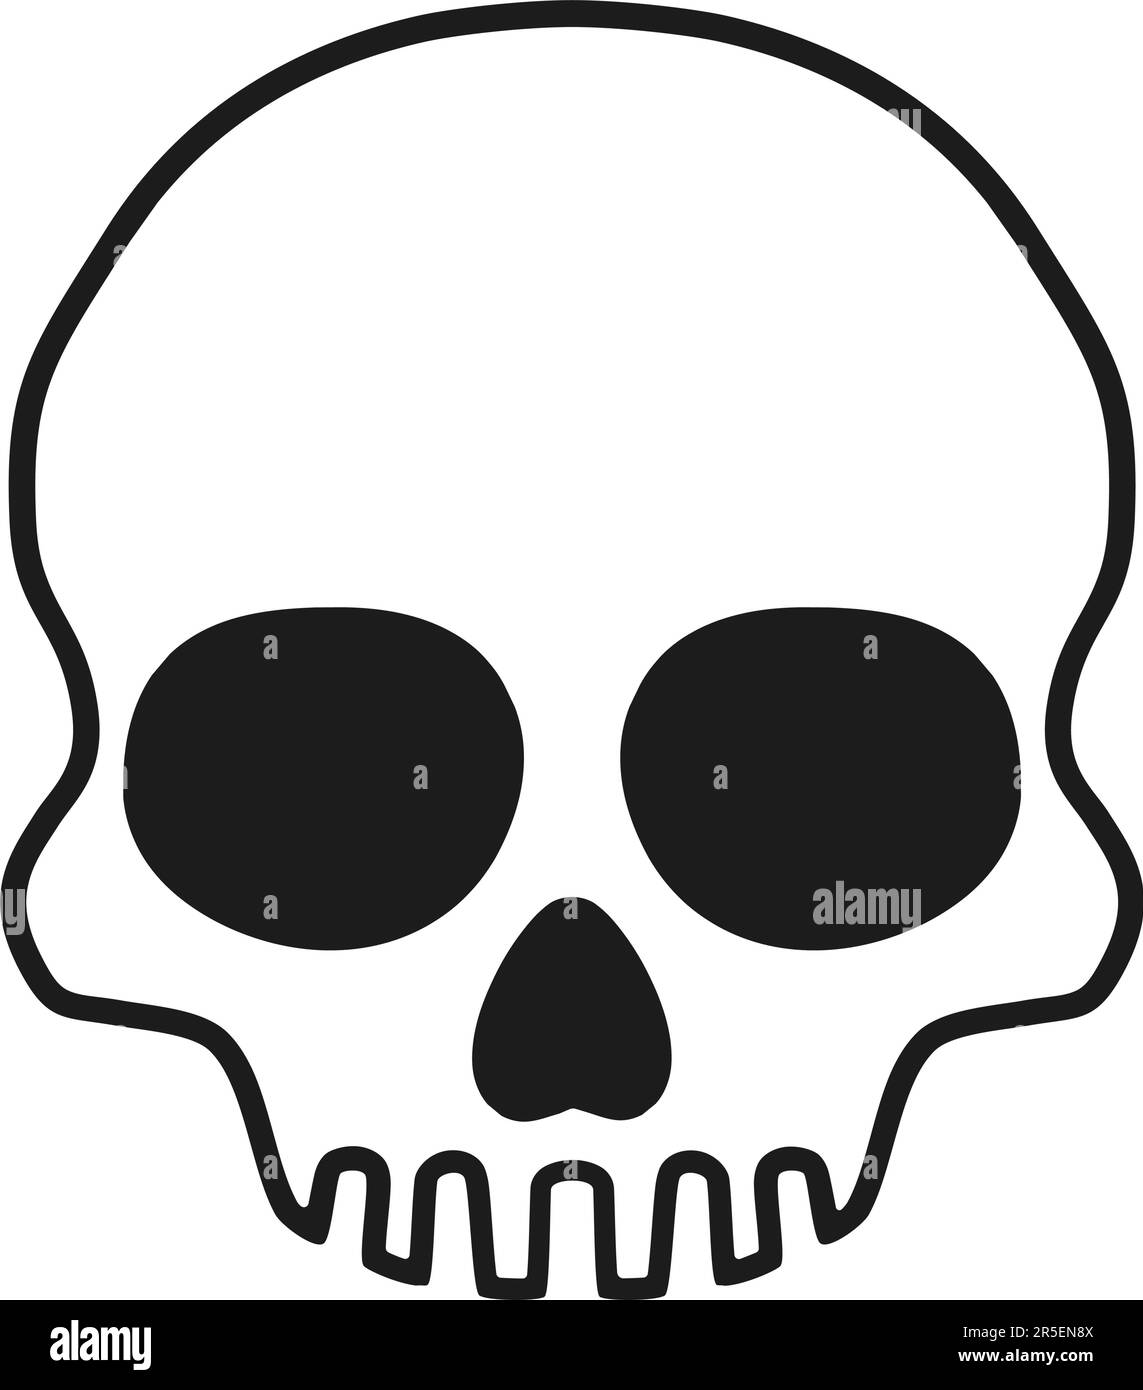 Human skull sign. Vector illustration. Cartoon Stock Vector Image & Art ...